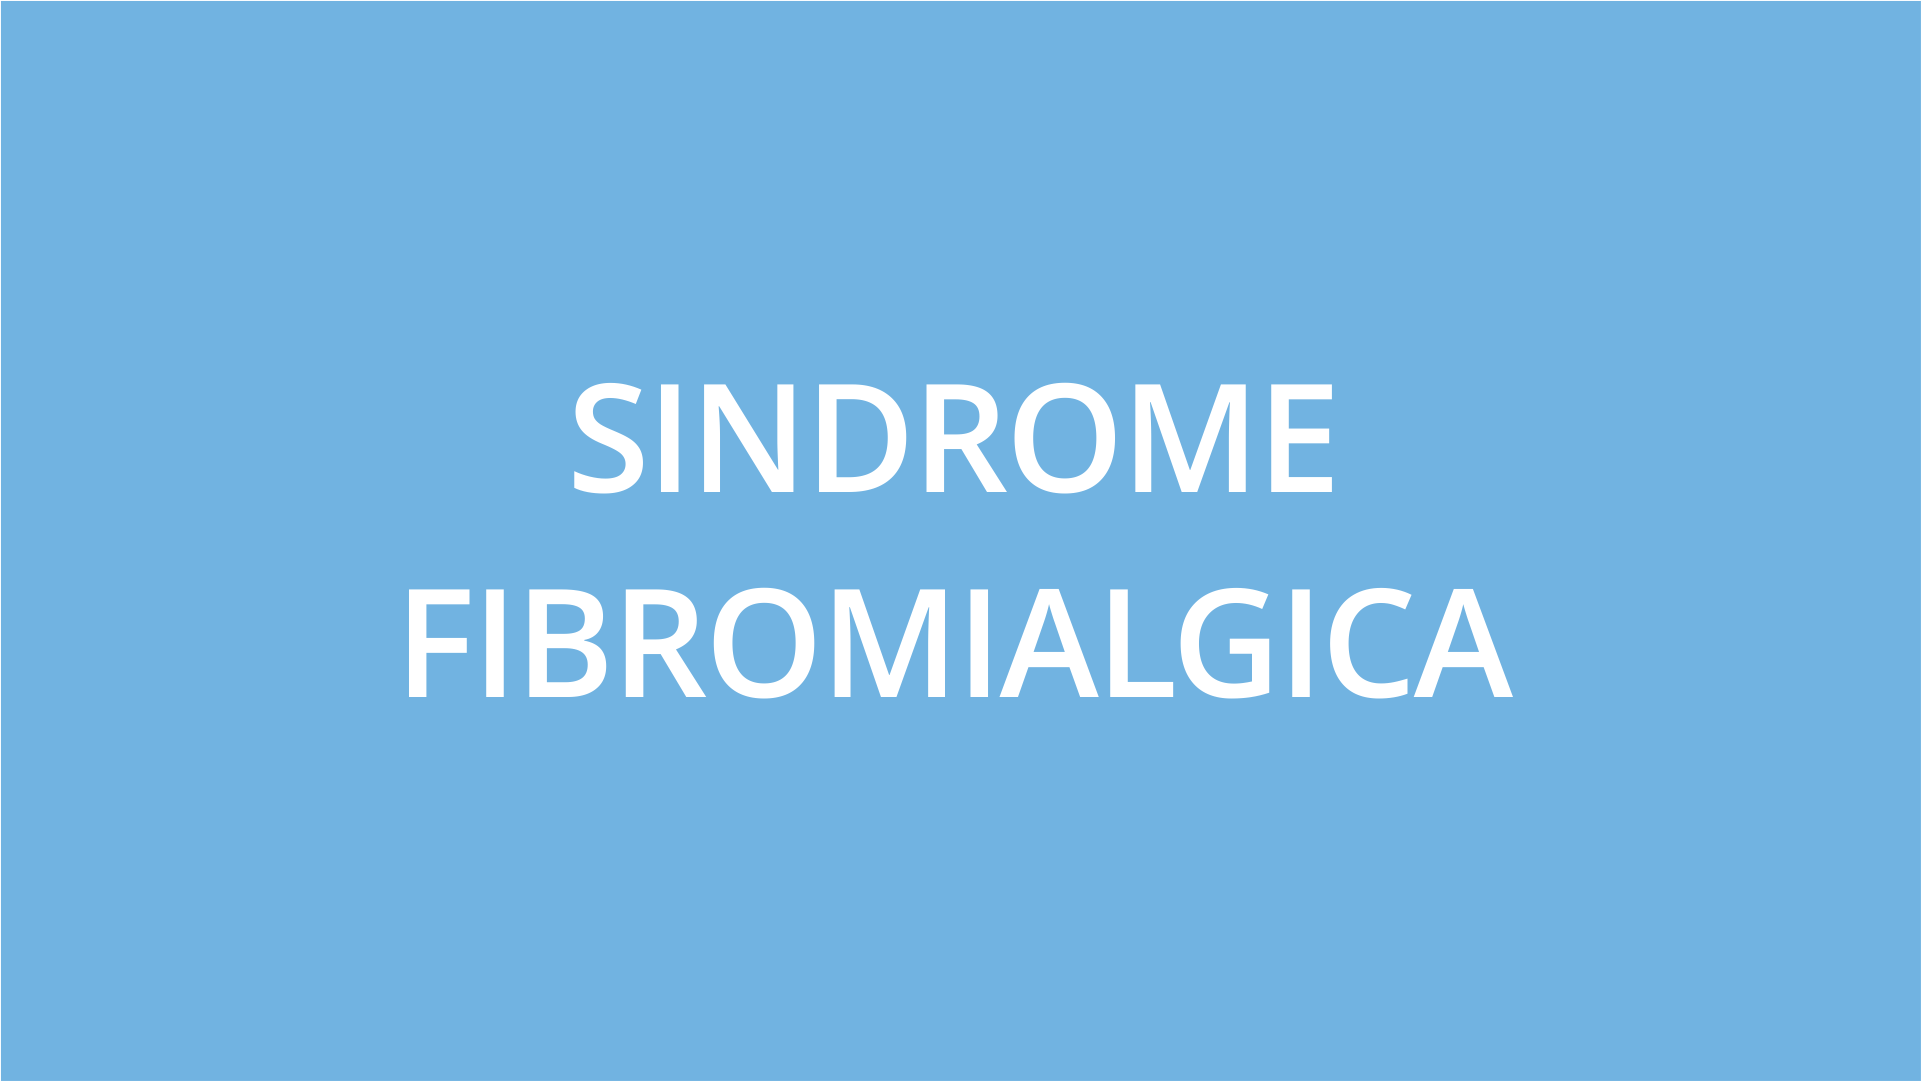 fisioterapia ughetta piacenza - sindrome fibromialgica